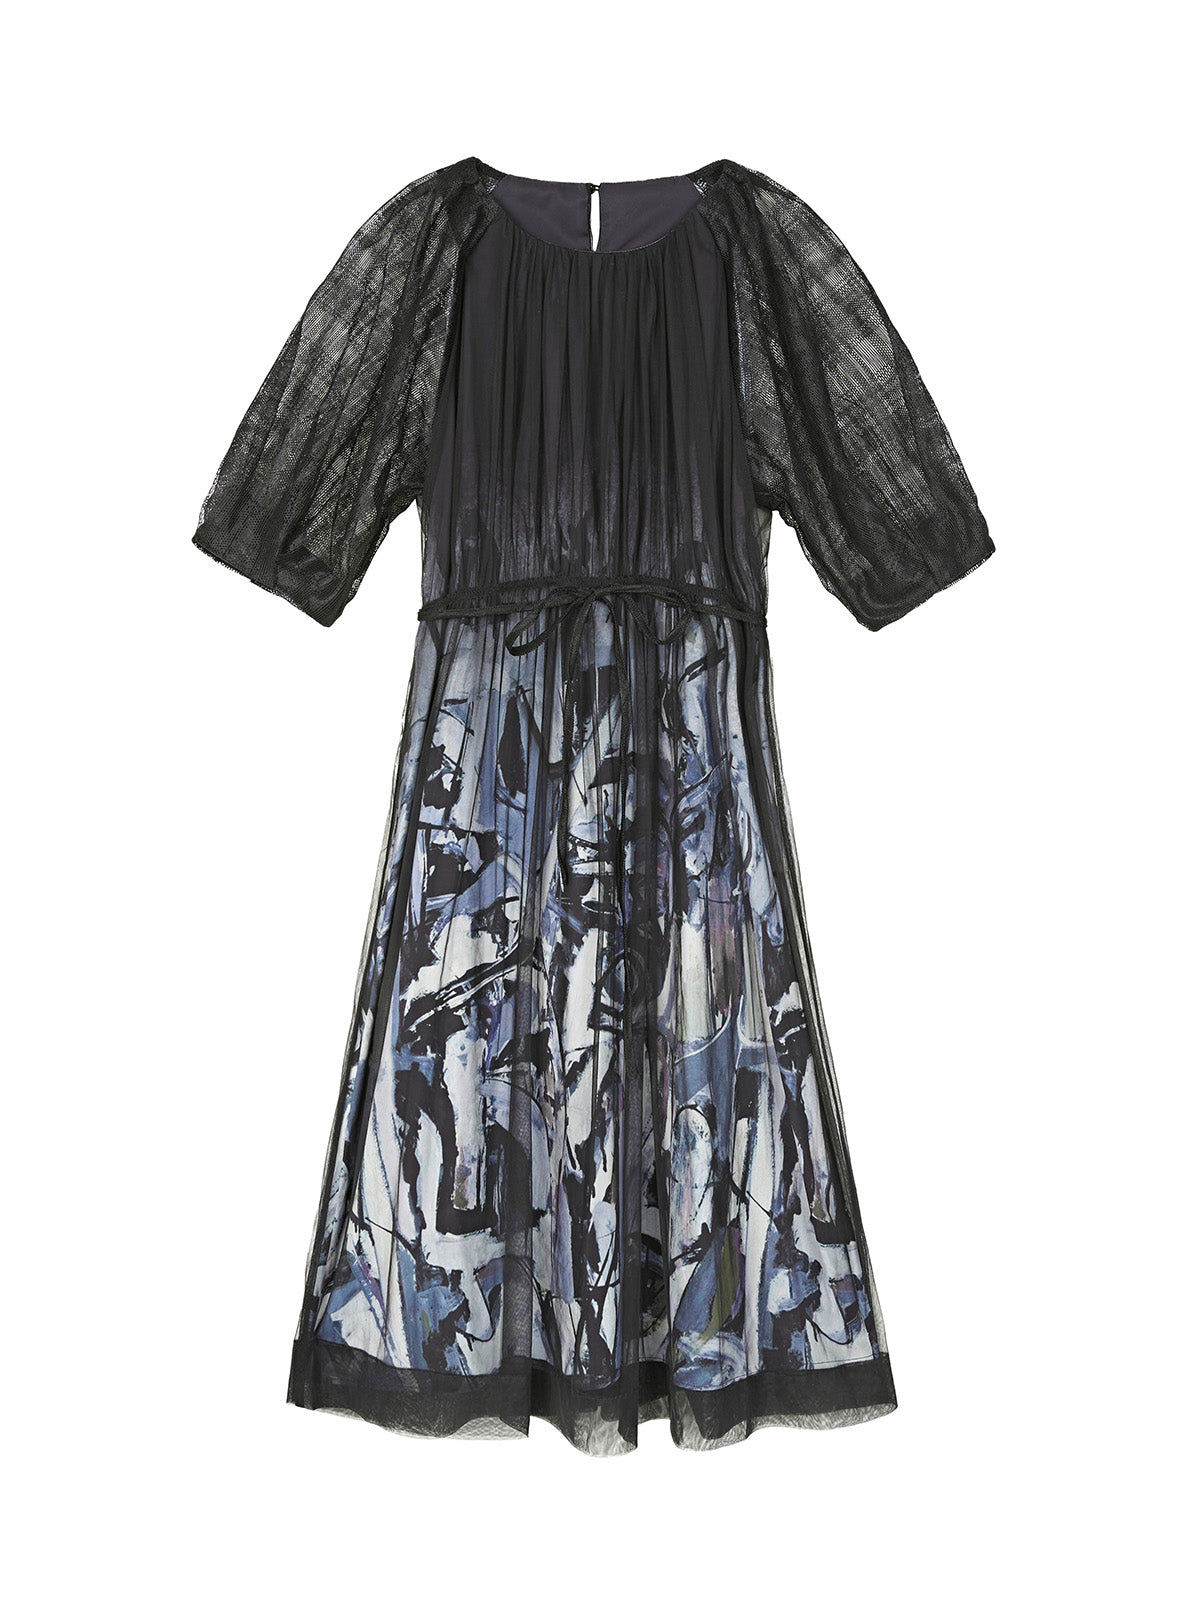 Bedrucktes Kleid mit transparenten Netzärmeln und Gittermuster